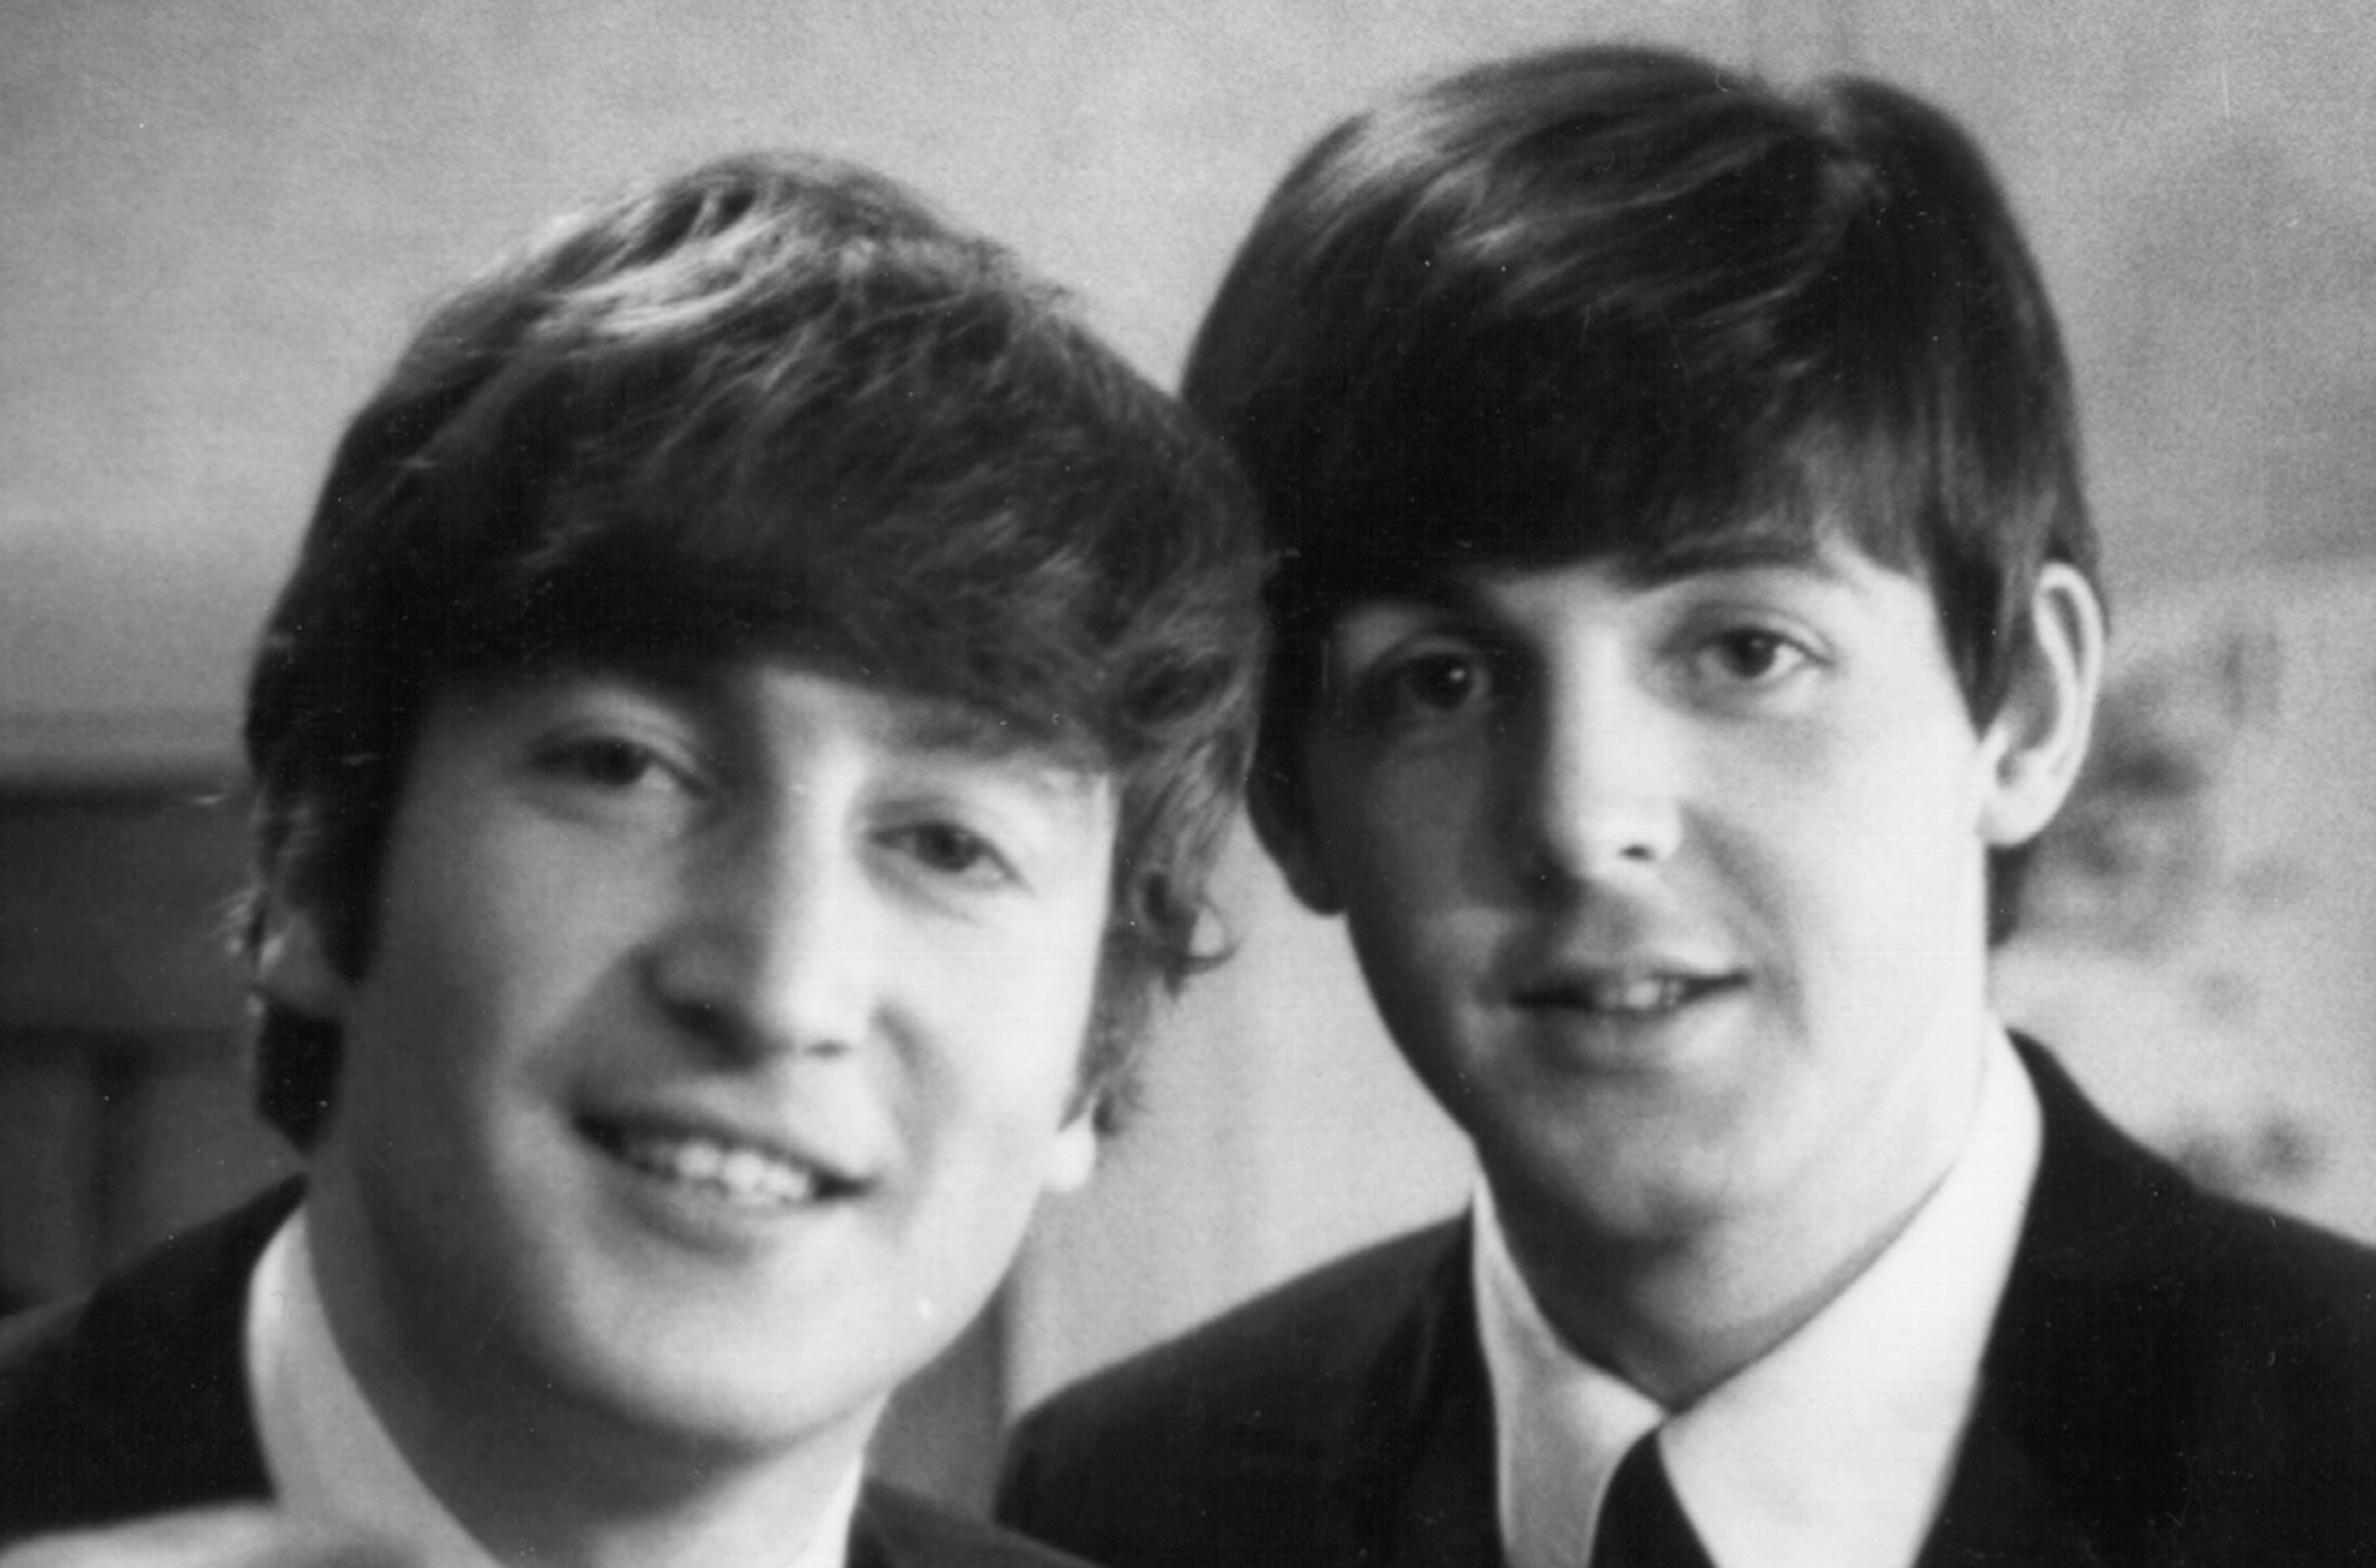 Mick Jagger on Why the John Lennon-Paul McCartney Partnership Ended